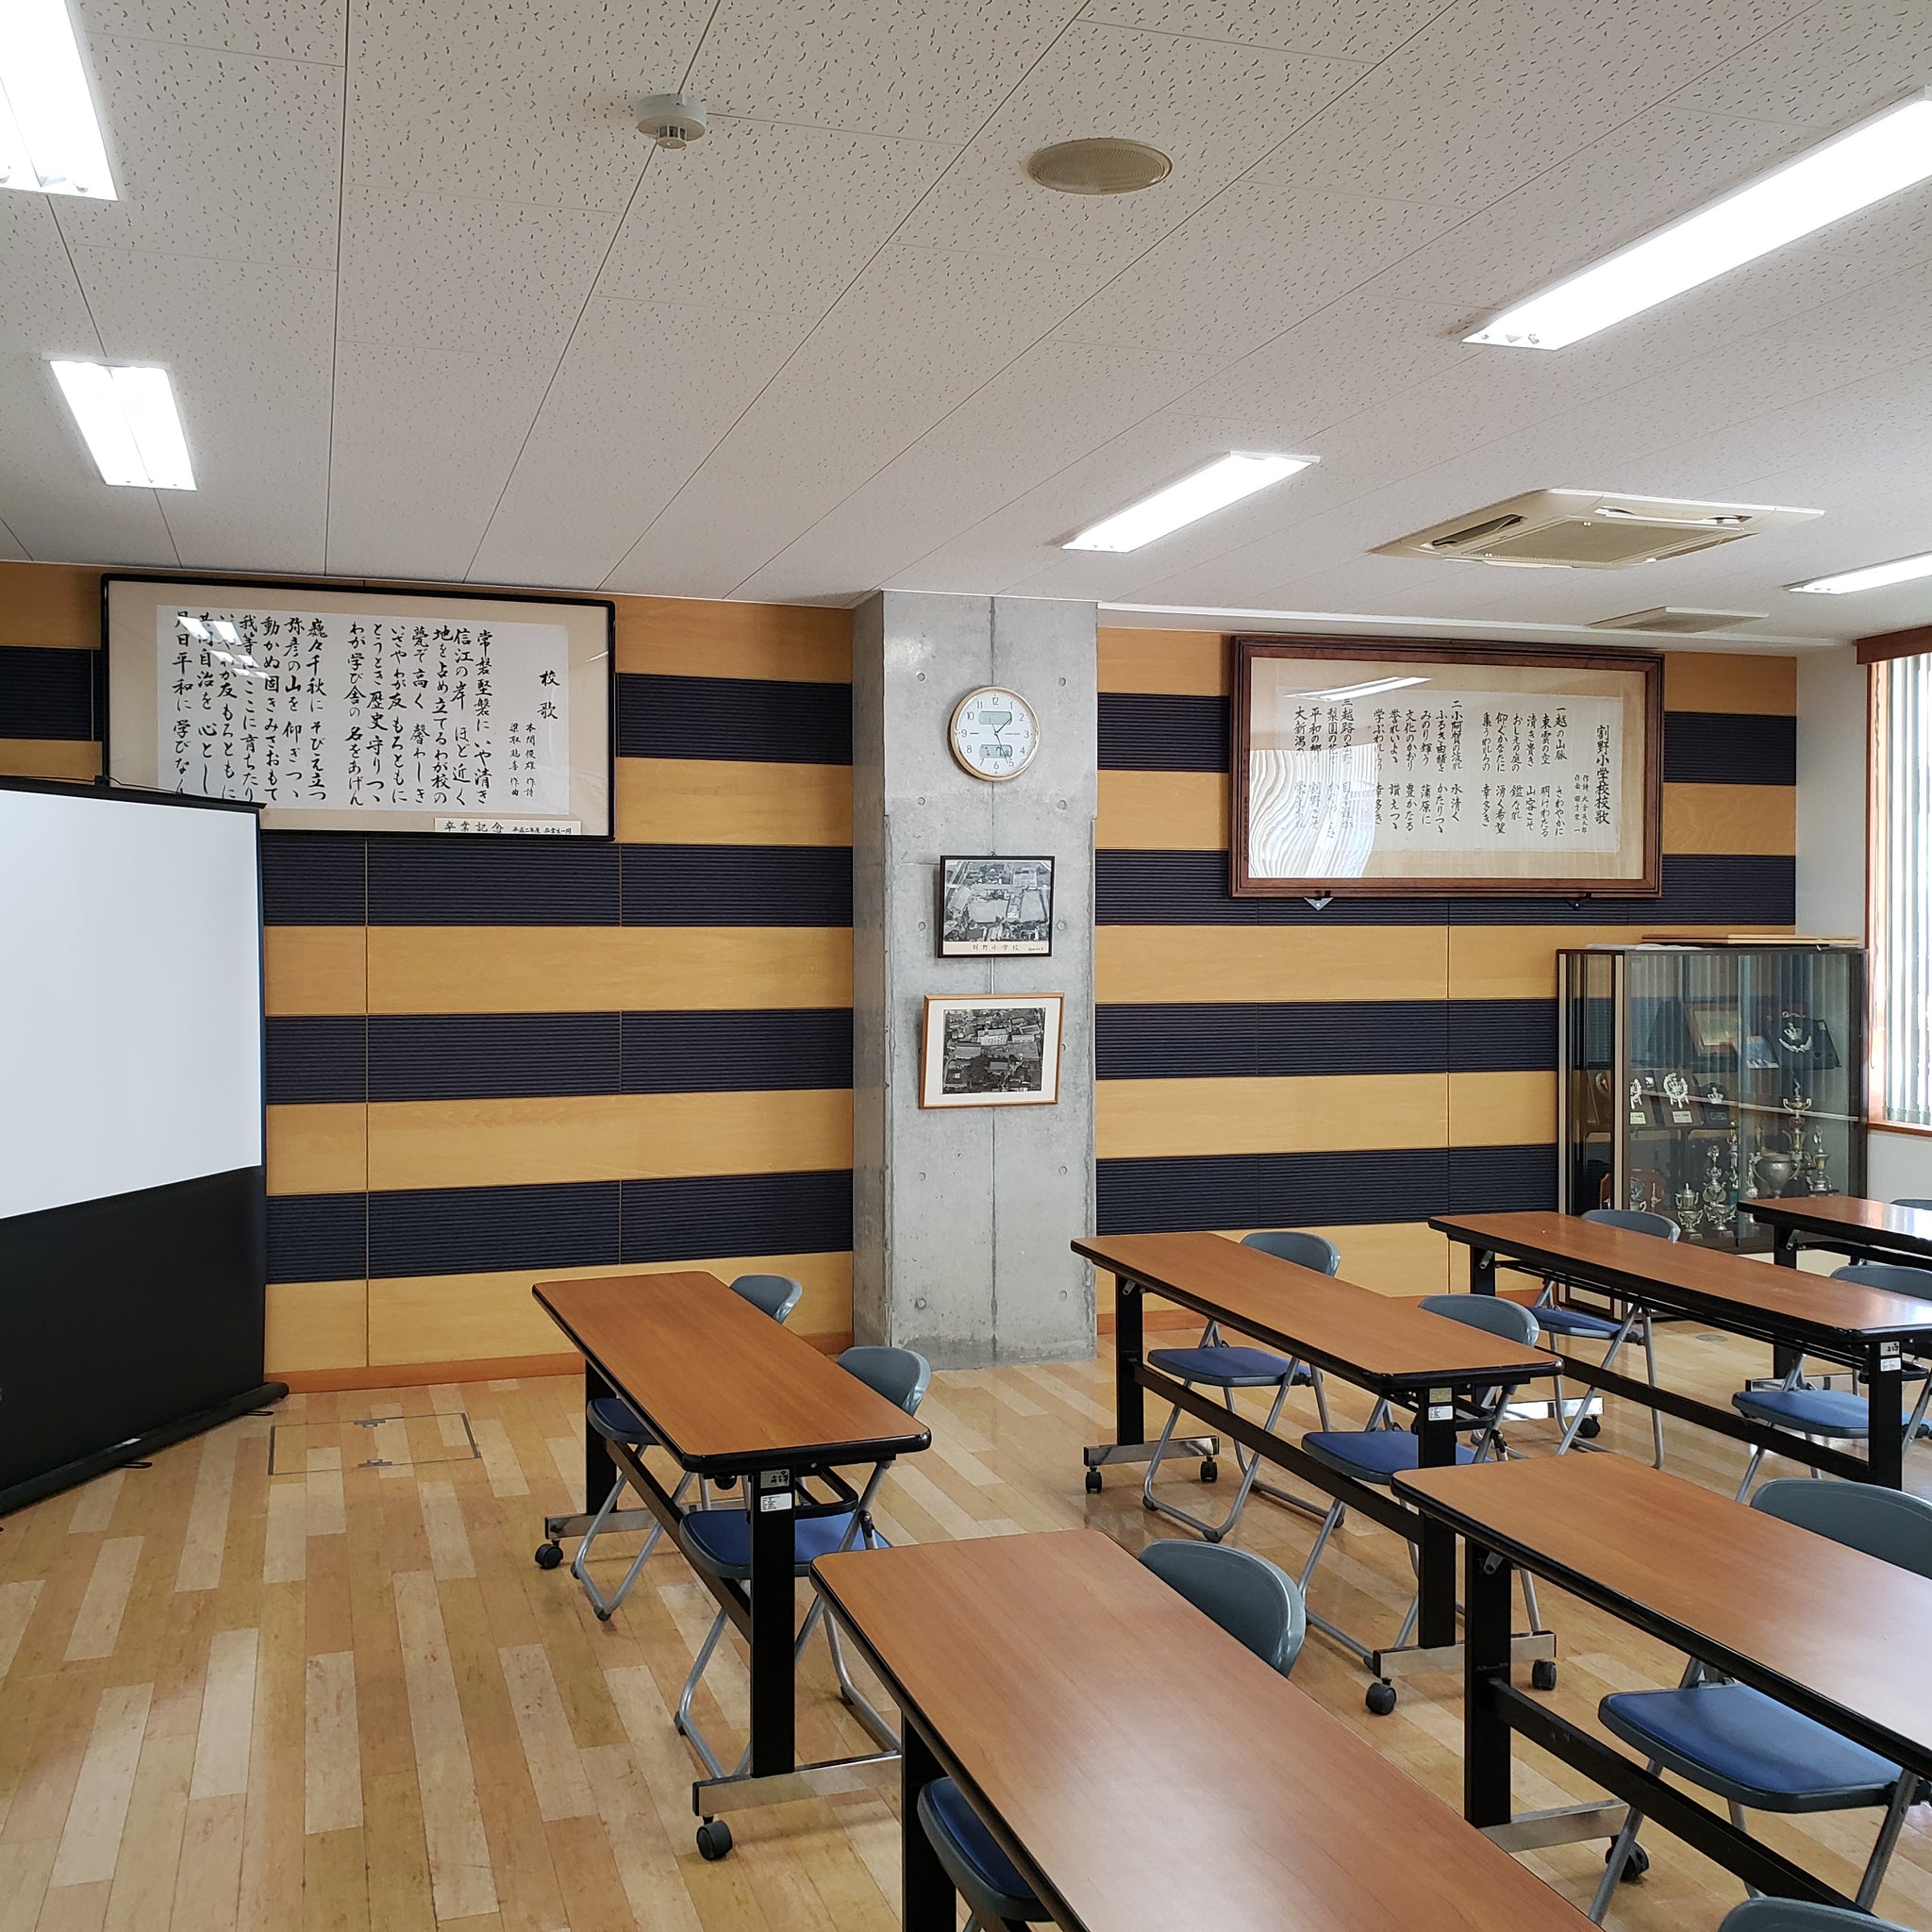 両川小学校の壁の装飾に使われている亀田縞